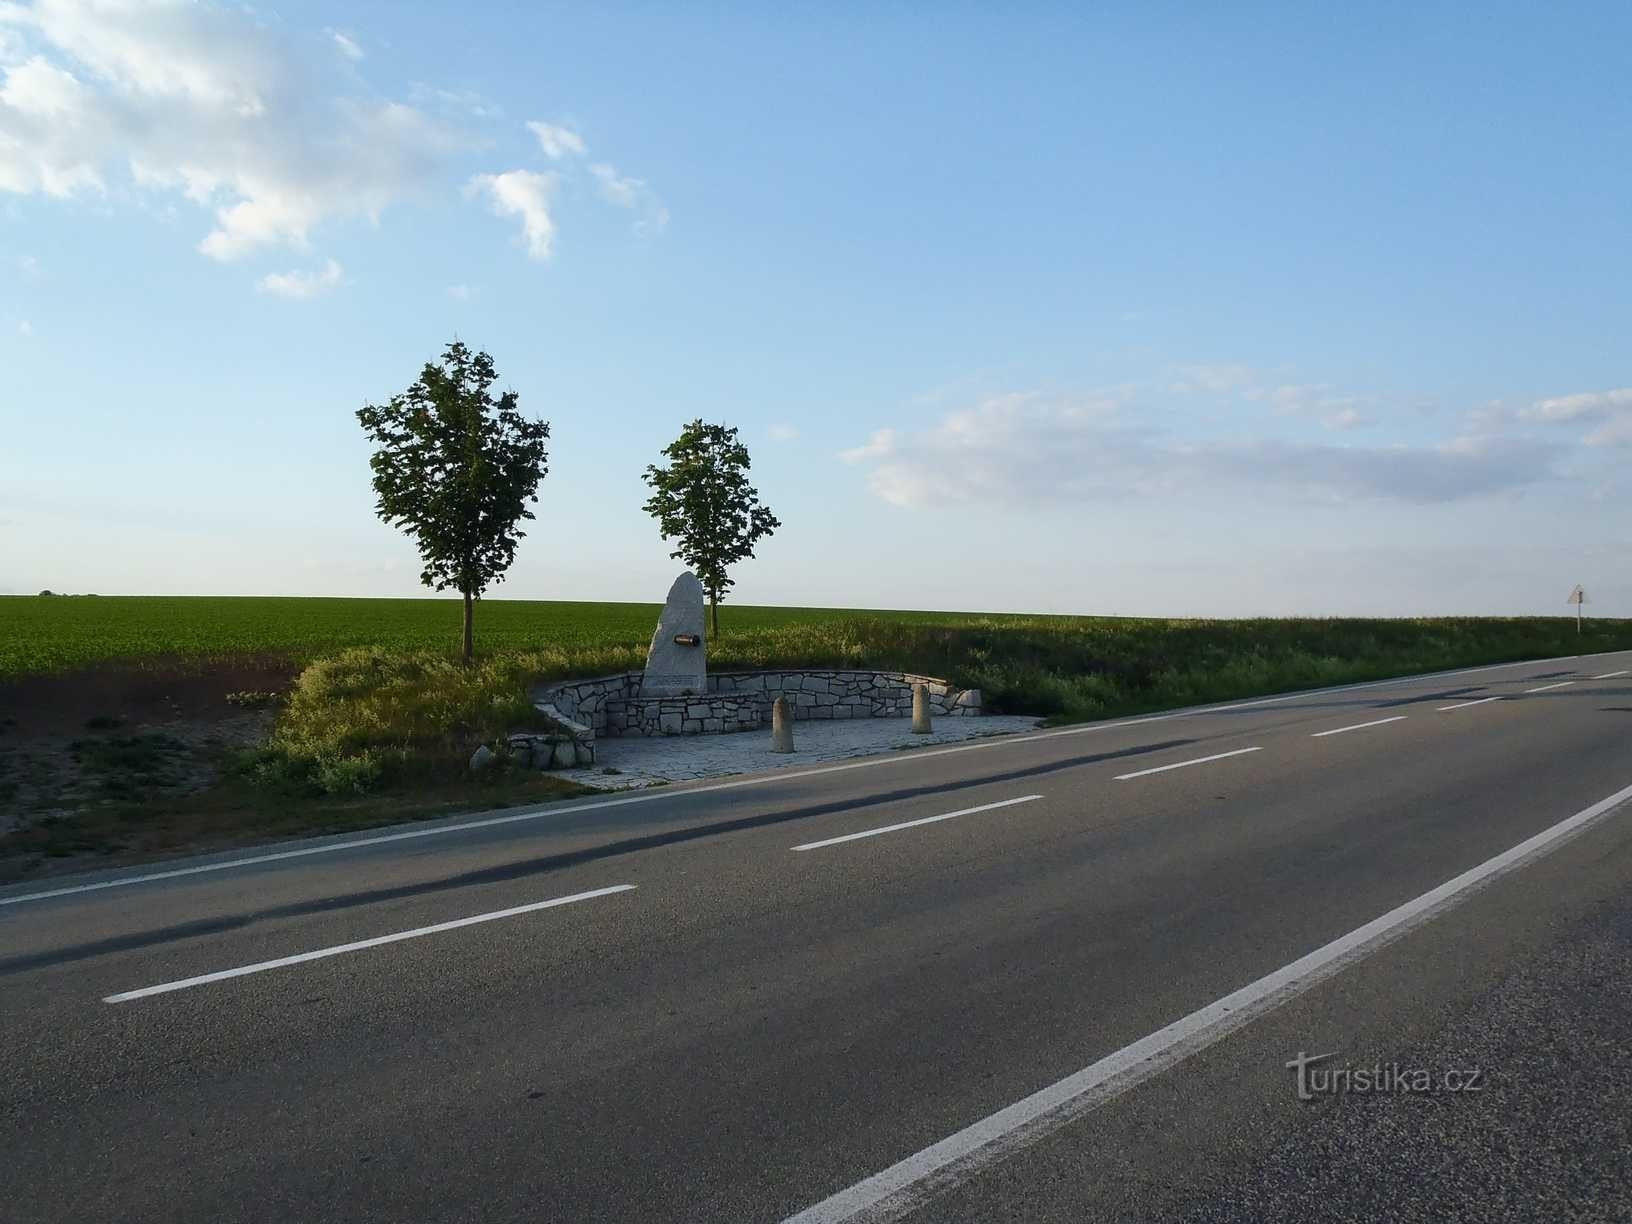 Pomnik austriackich artylerzystów - 25.5.2012